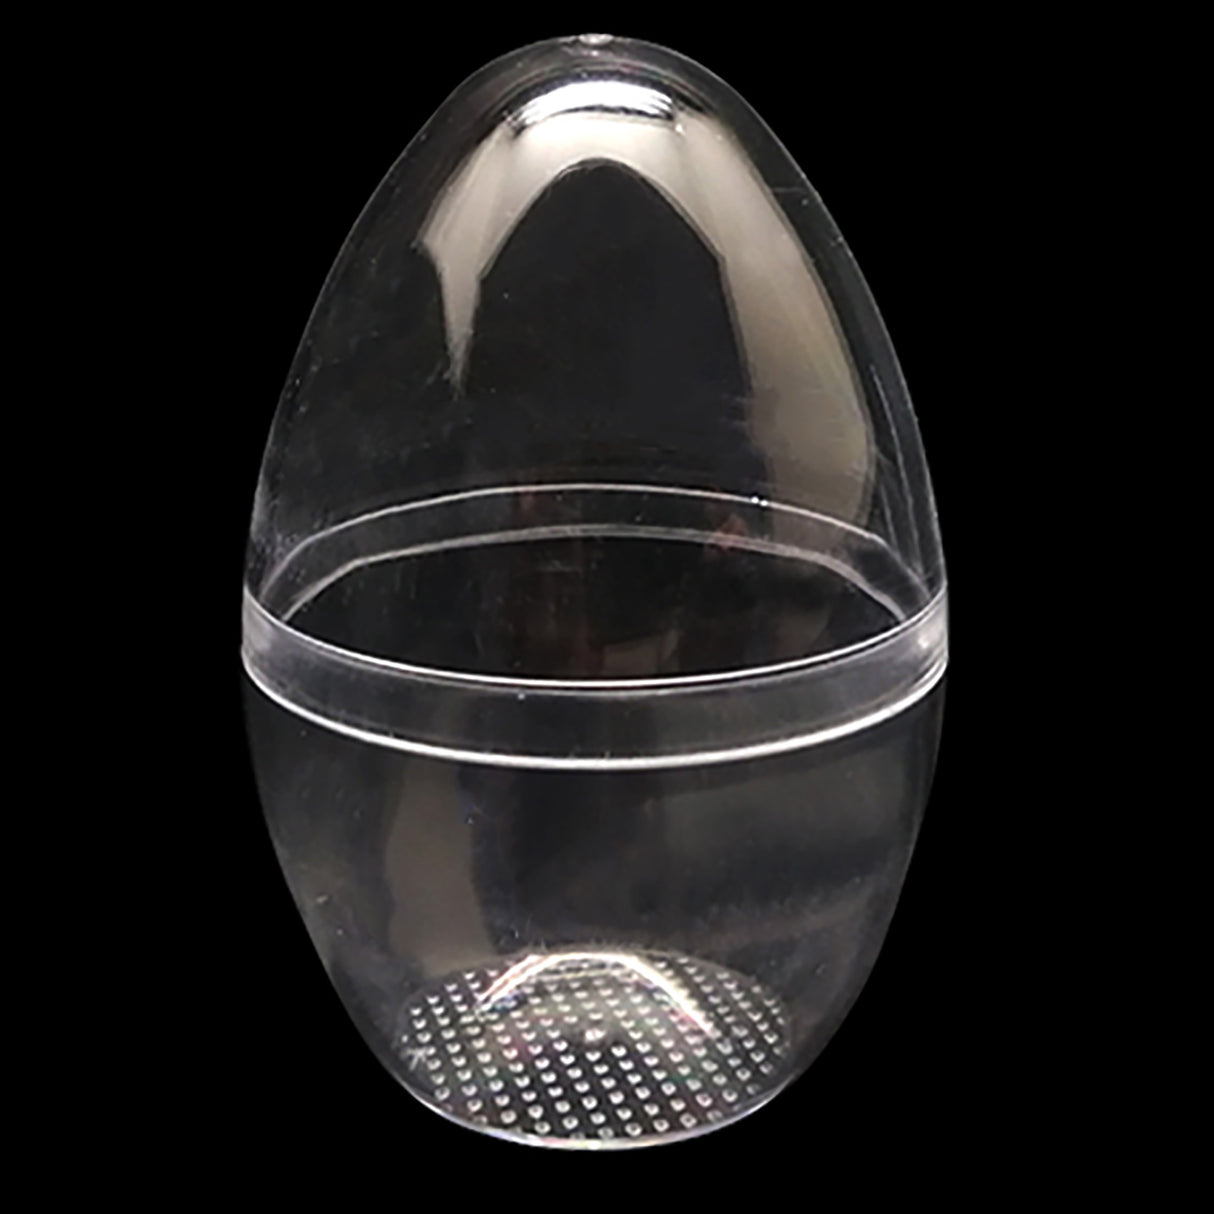 Juego de 3 adornos de huevos de pie de plástico transparente de 3,05 pulgadas (78 mm)